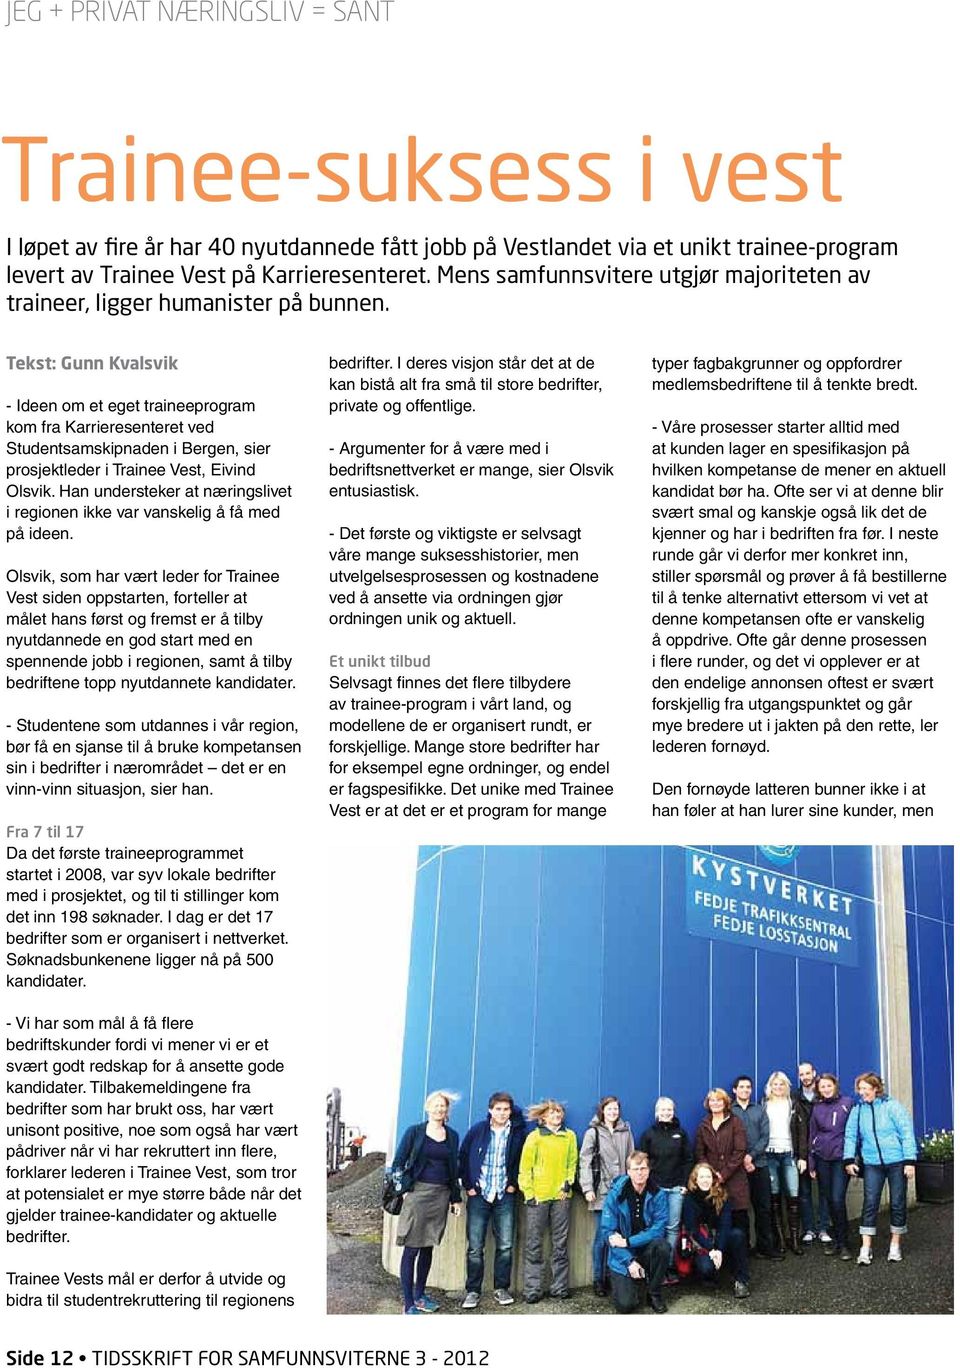 Tekst: Gunn Kvalsvik - Ideen om et eget traineeprogram kom fra Karrieresenteret ved Studentsamskipnaden i Bergen, sier prosjektleder i Trainee Vest, Eivind Olsvik.